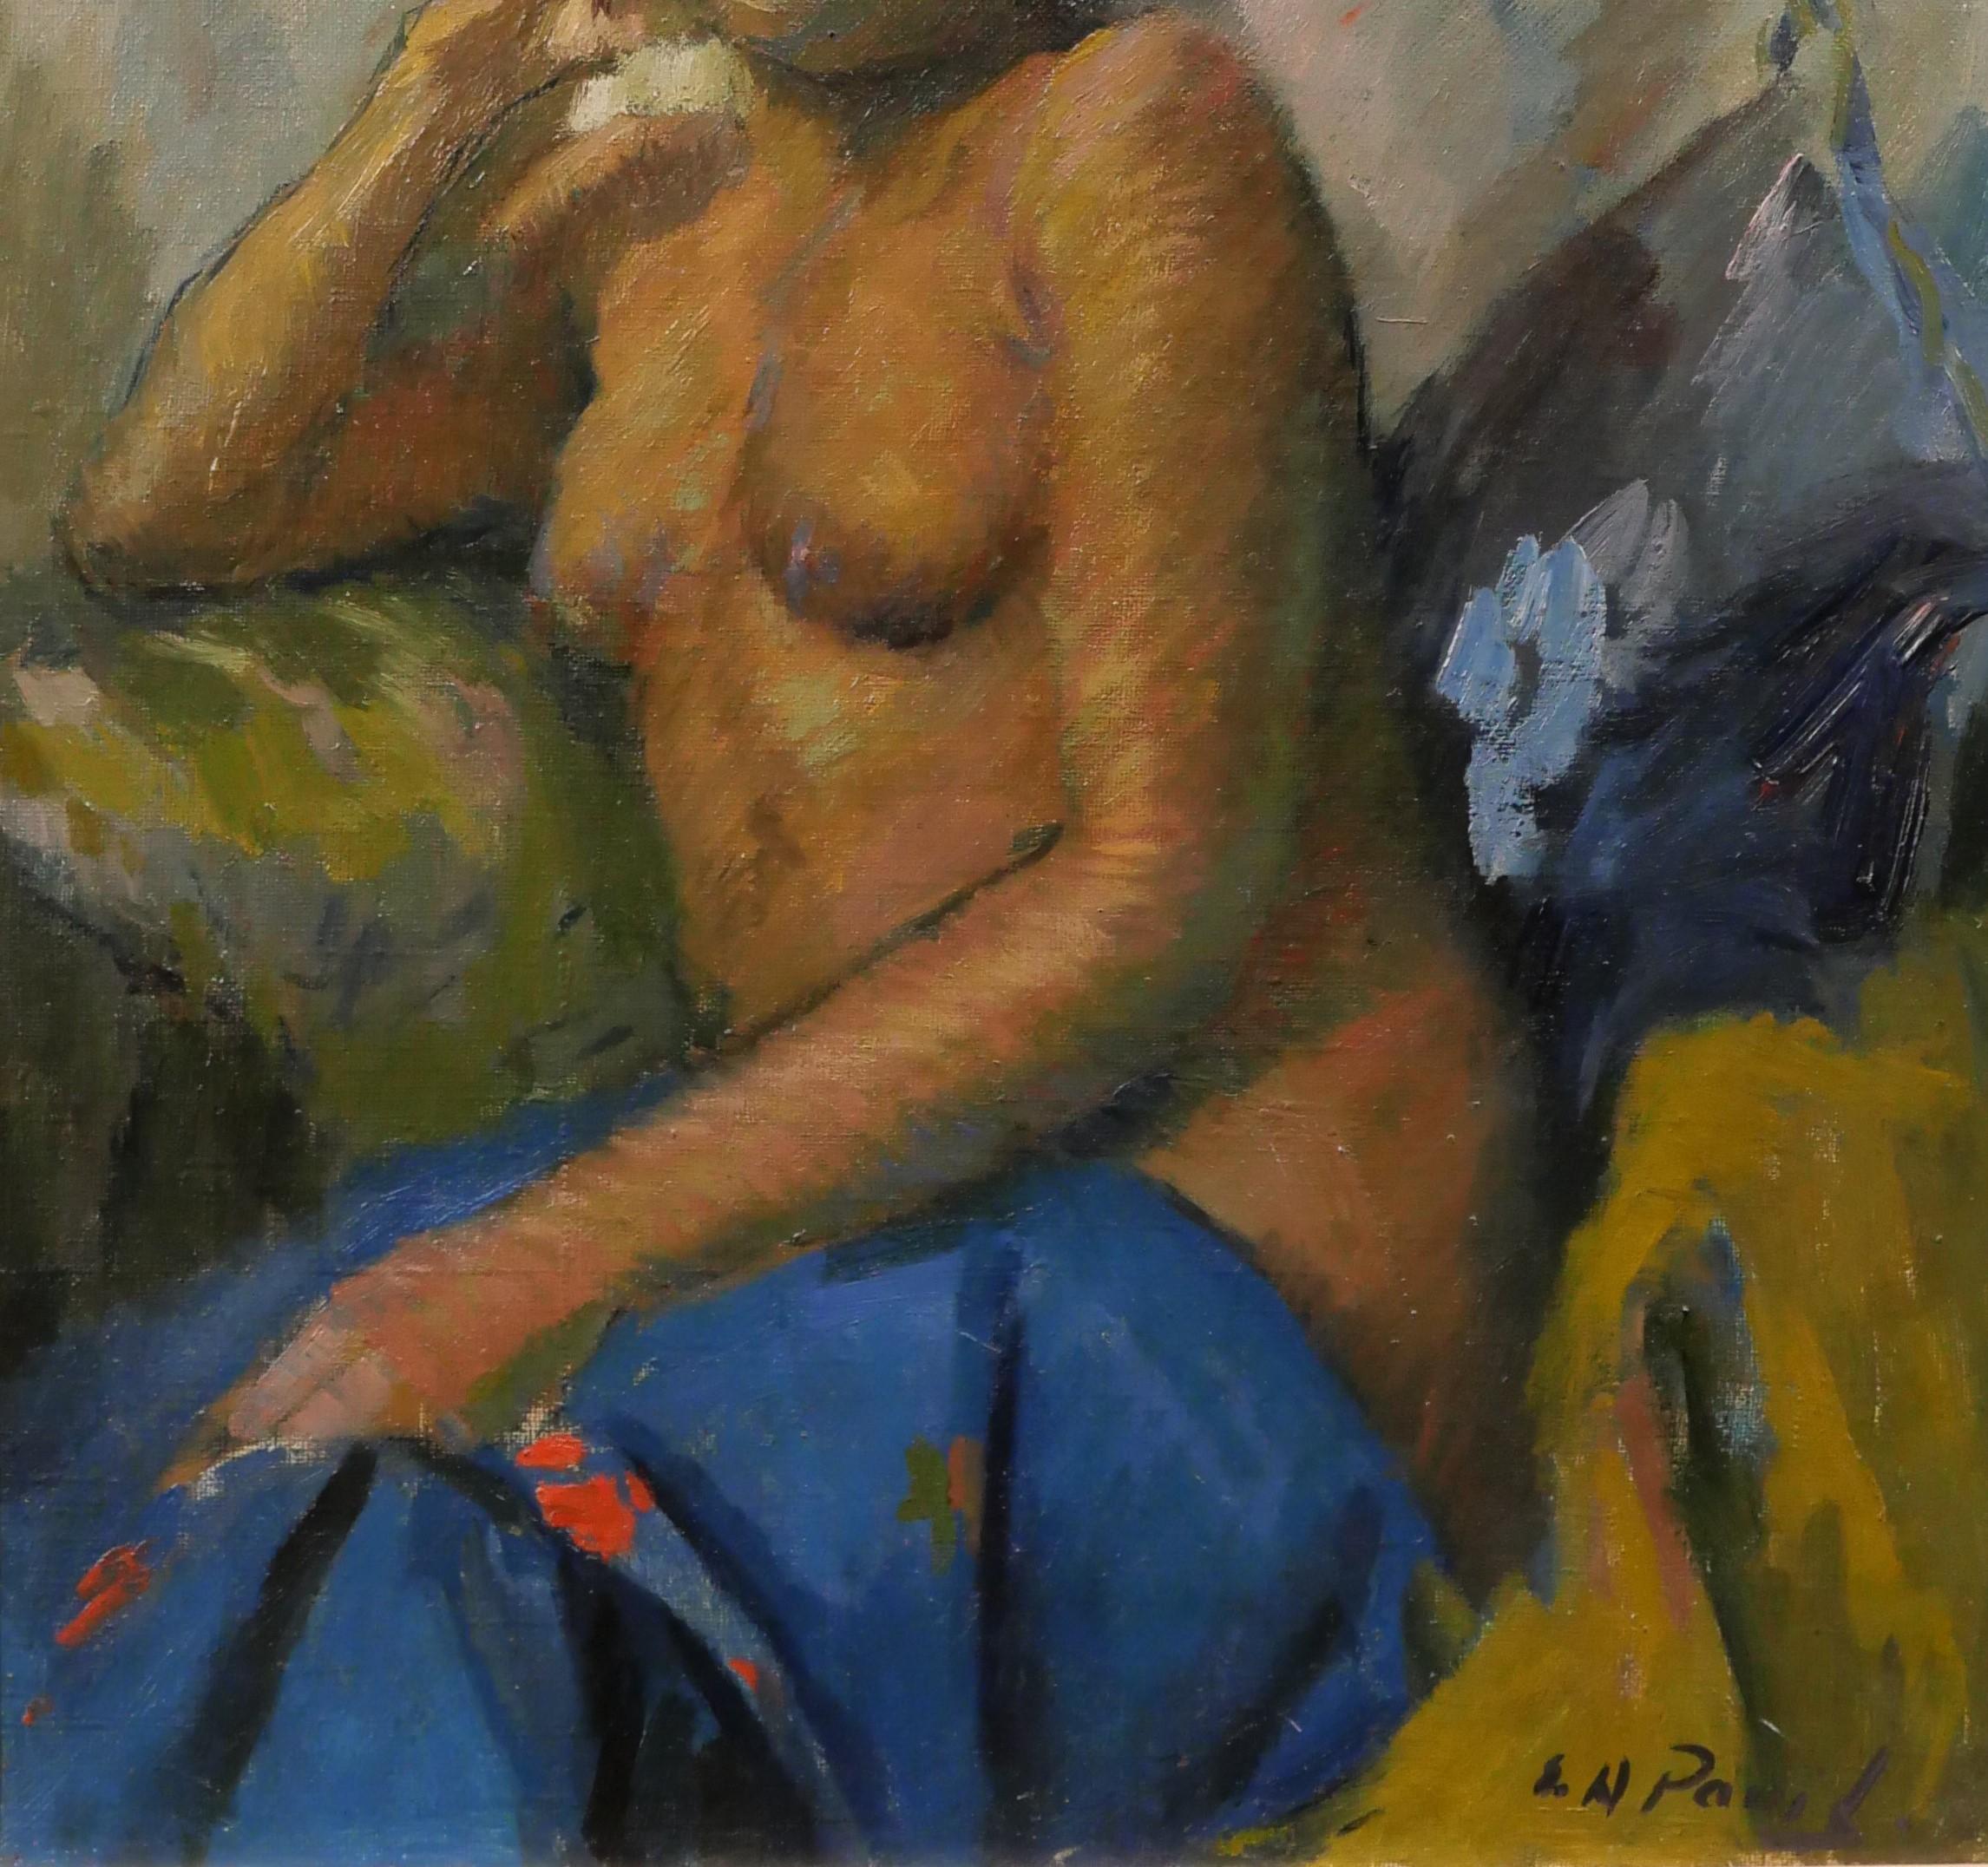 Elie Anatole PAVIL
1873-1948
La femme nue martiniquaise
Peinture, huile sur toile
Signé
Peinture : 41 x 33 cm (16.1 x 13 pouces)
Cadre moderne en chêne naturel (boîte américaine) : 51 x 43 cm (20.1 x 16.9 pouces)
Très bon état.
Au dos, un Label